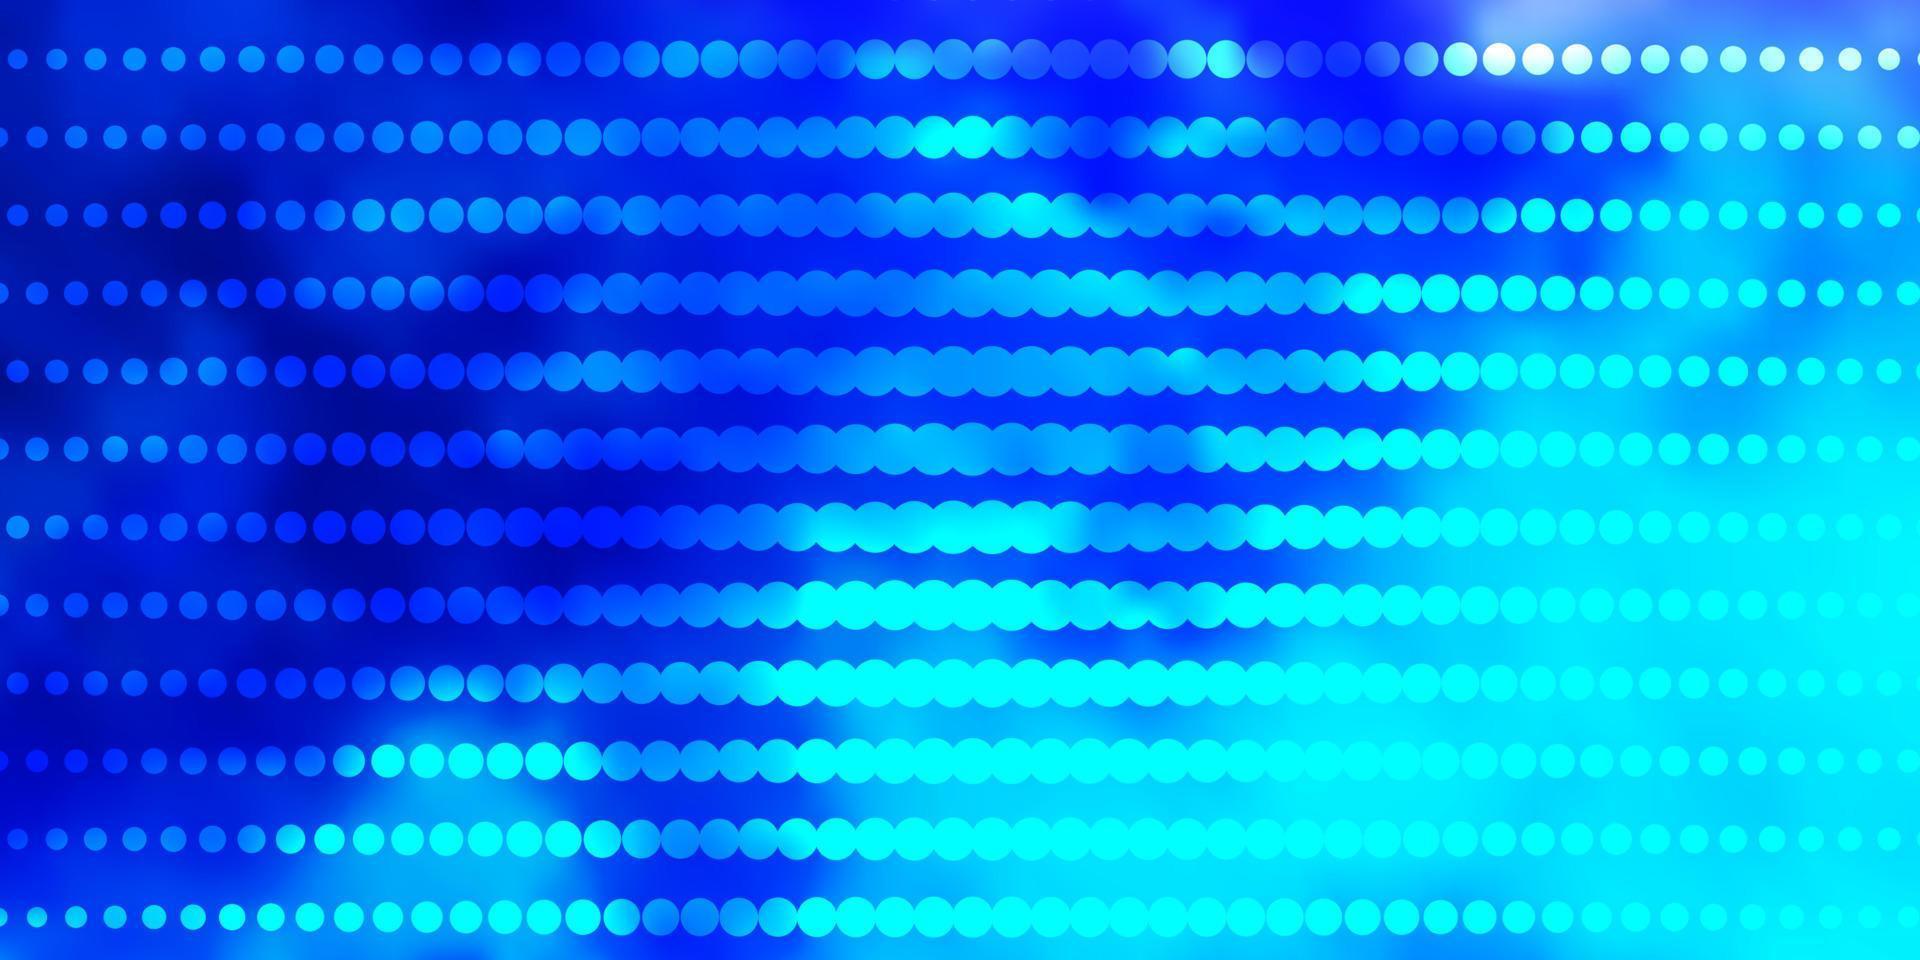 ljusrosa, blå vektormall med cirklar. vektor